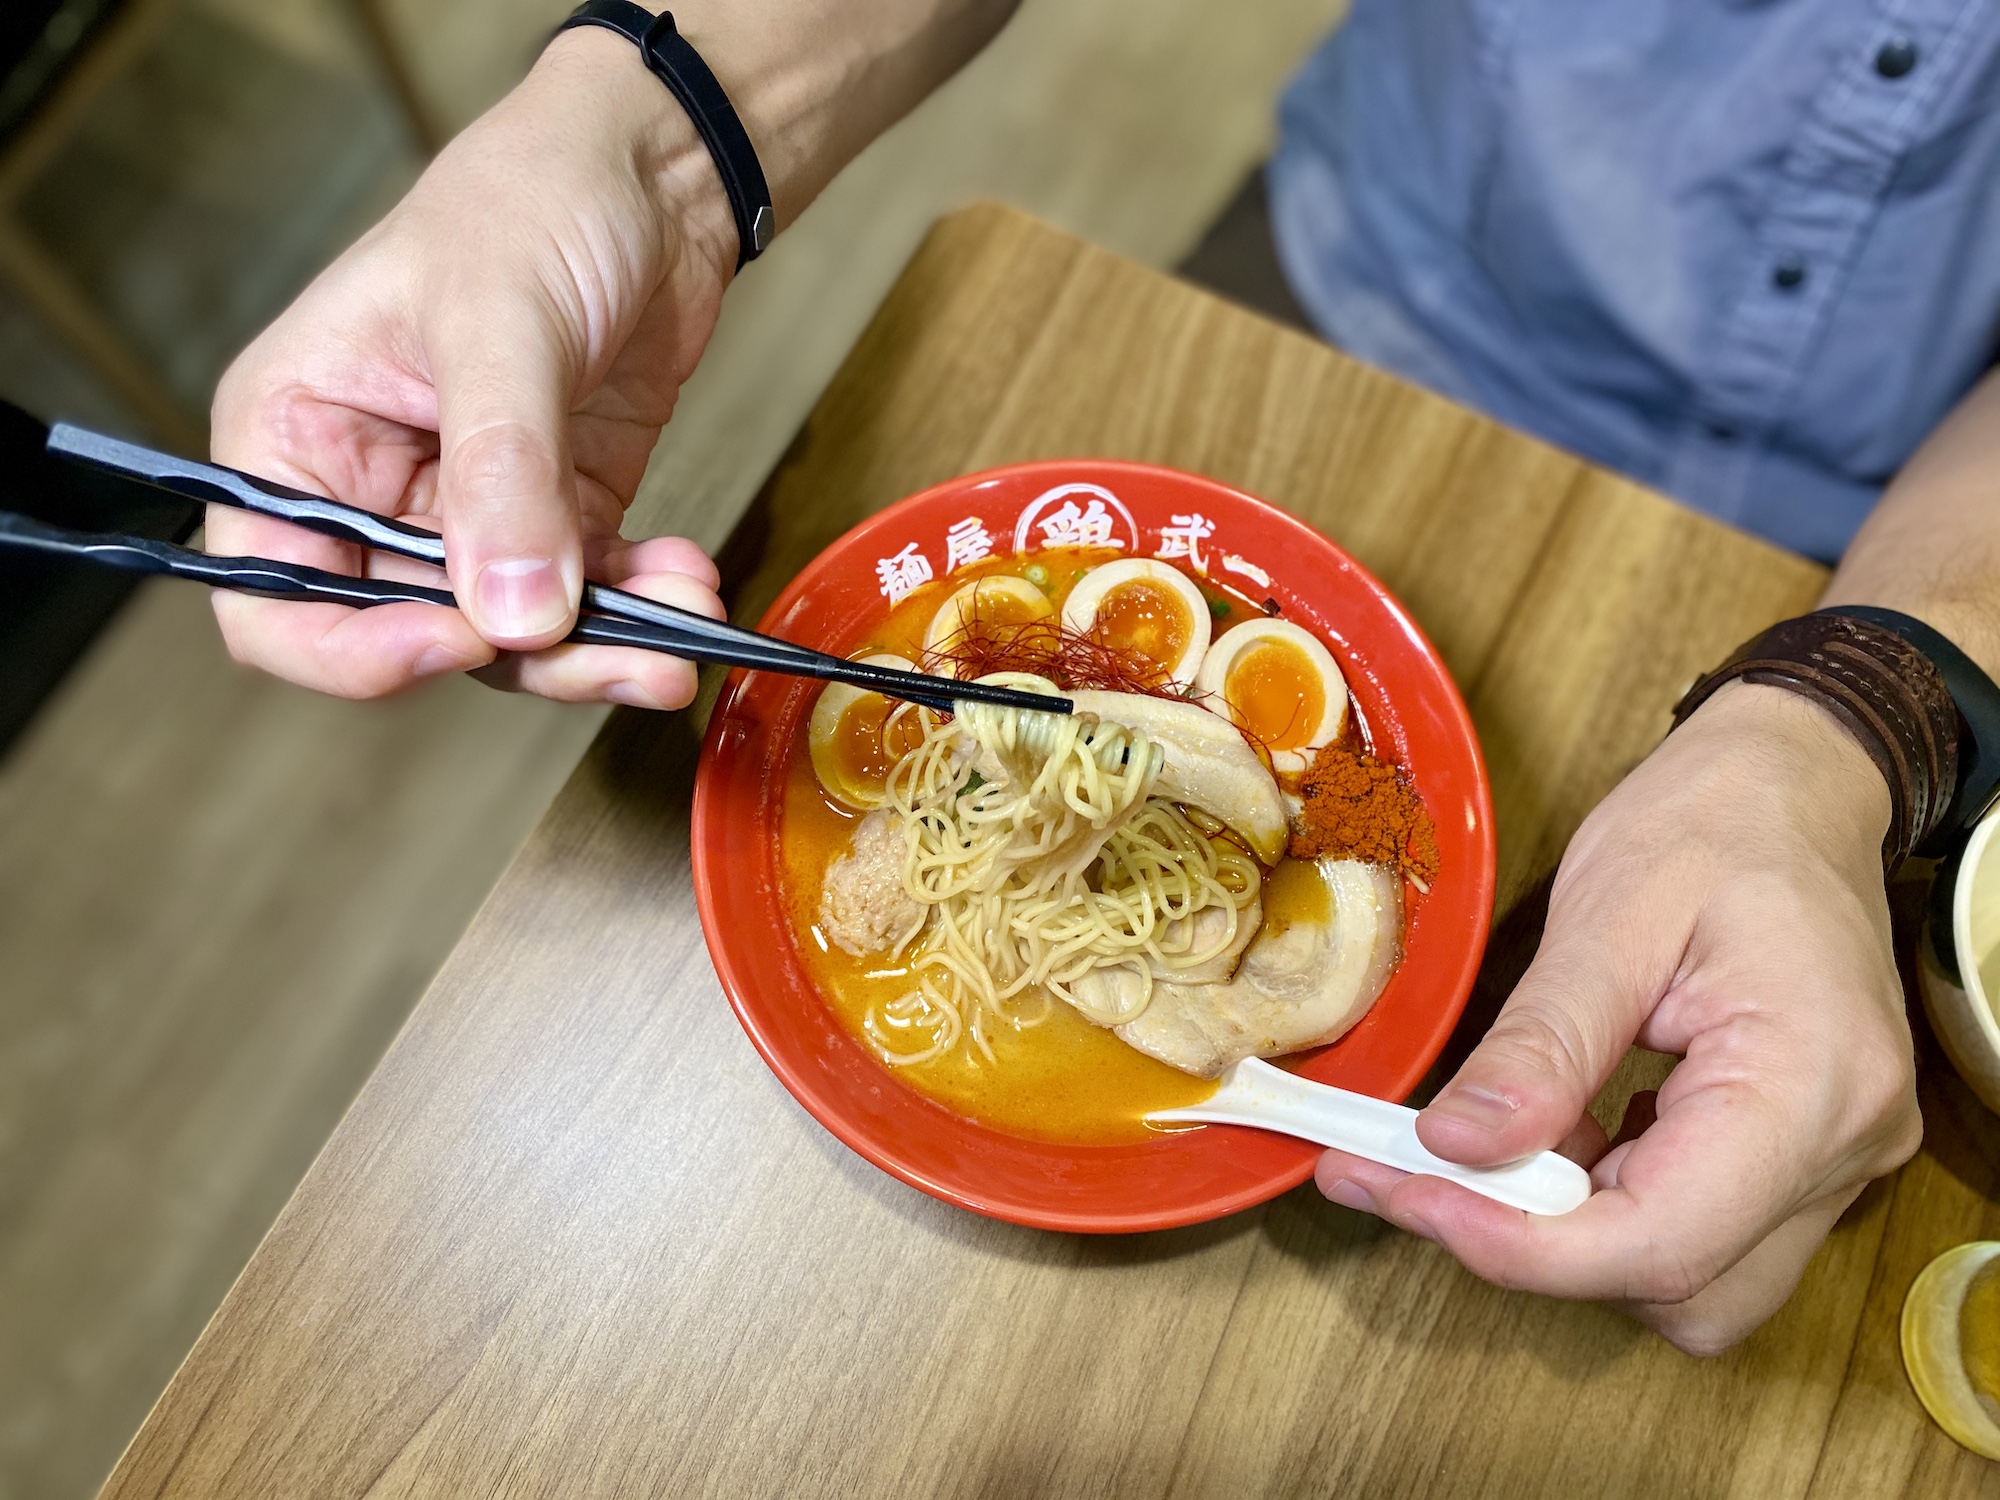 tokyo shimbashi tori paitan spicy ramen macau lifestyle